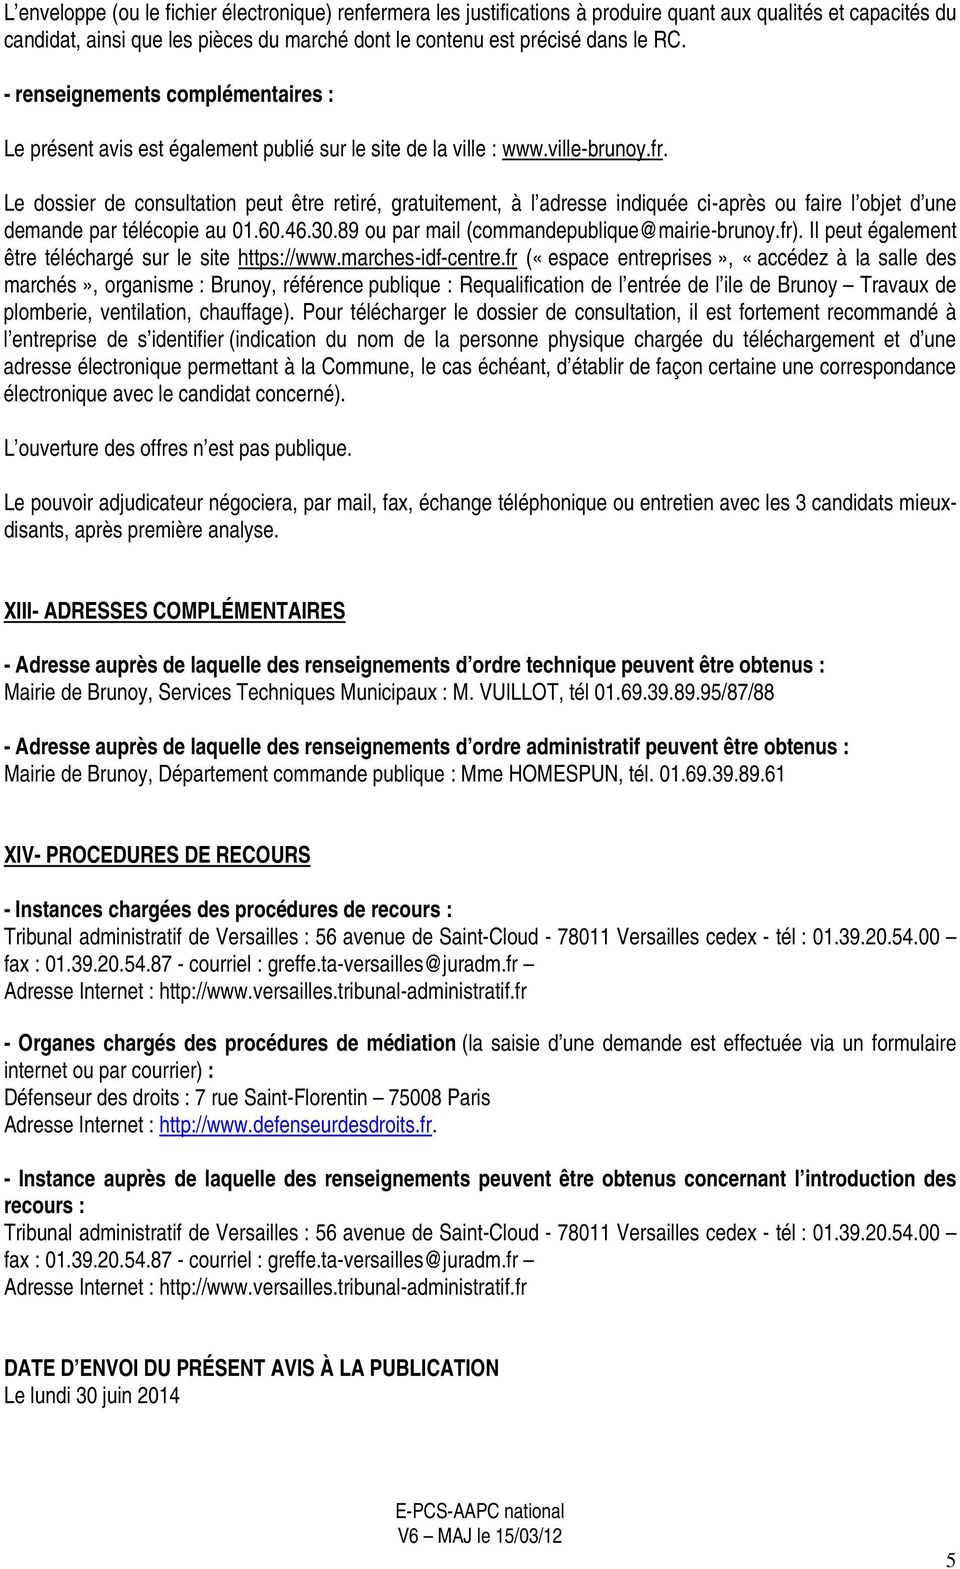 Le dossier de consultation peut être retiré, gratuitement, à l adresse indiquée ci-après ou faire l objet d une demande par télécopie au 01.60.46.30.89 ou par mail (commandepublique@mairie-brunoy.fr).